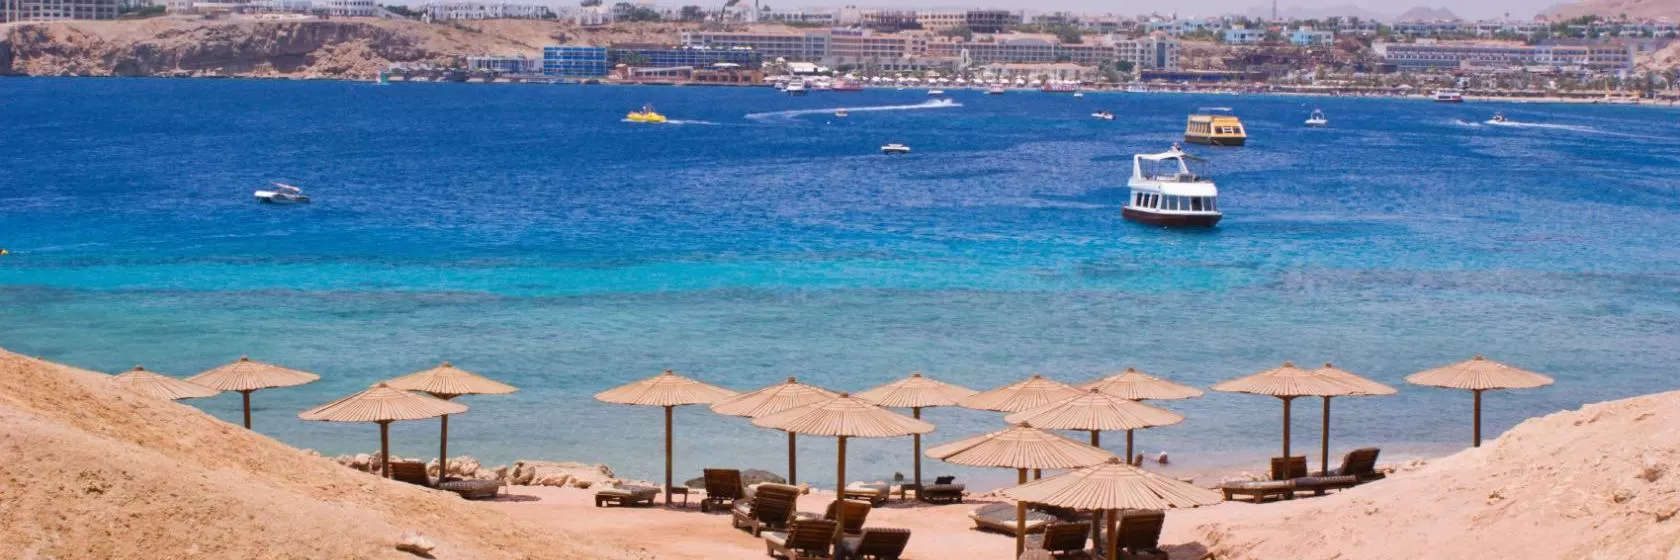 Sharm El Sheikh Hotels & Accommodation